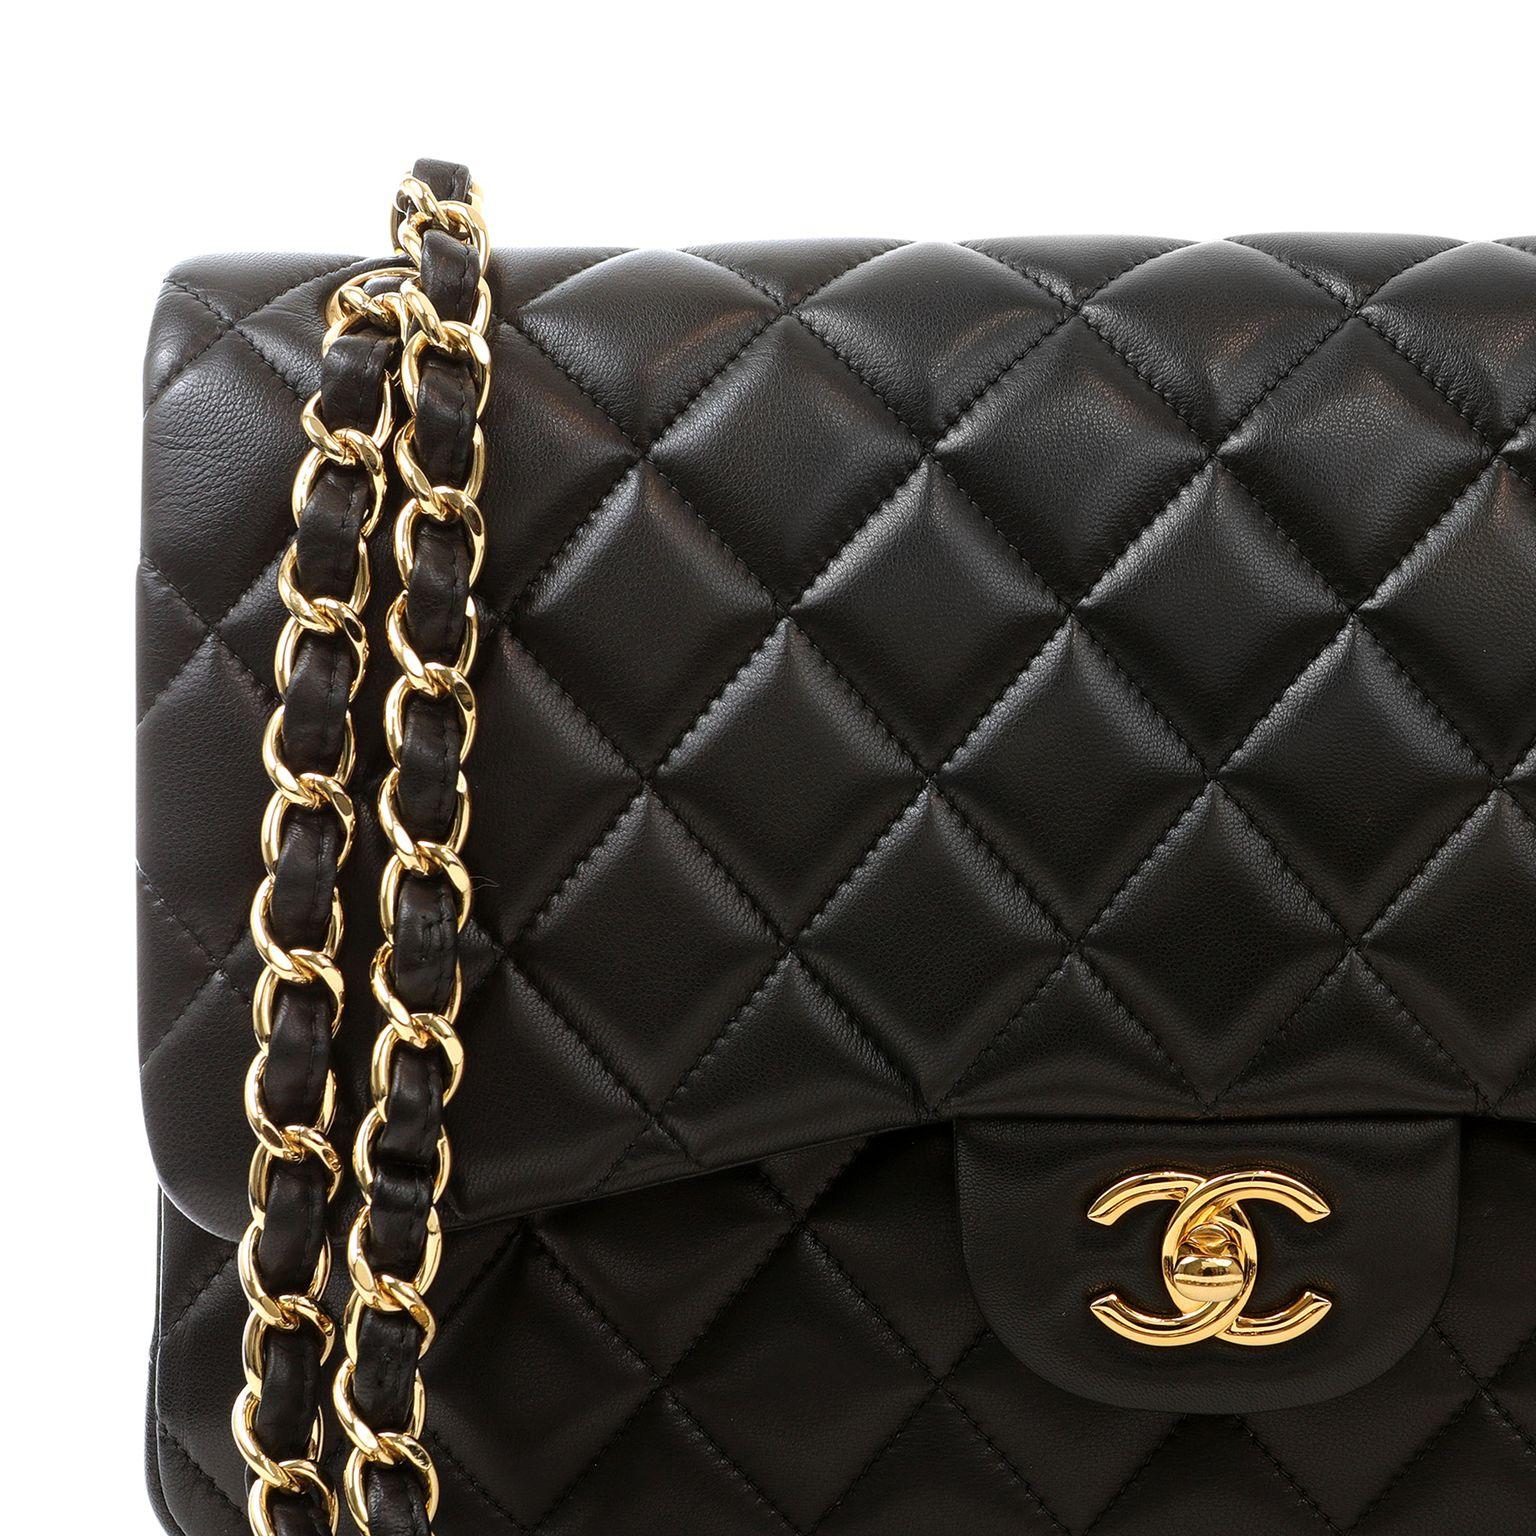 Cet authentique Chanel Black Lambskin Jumbo Classic est en parfait état. Associée à une quincaillerie dorée, cette combinaison classique est difficile à trouver et probablement la plus convoitée de toutes les Jumbo Classics.    Sac à poussière